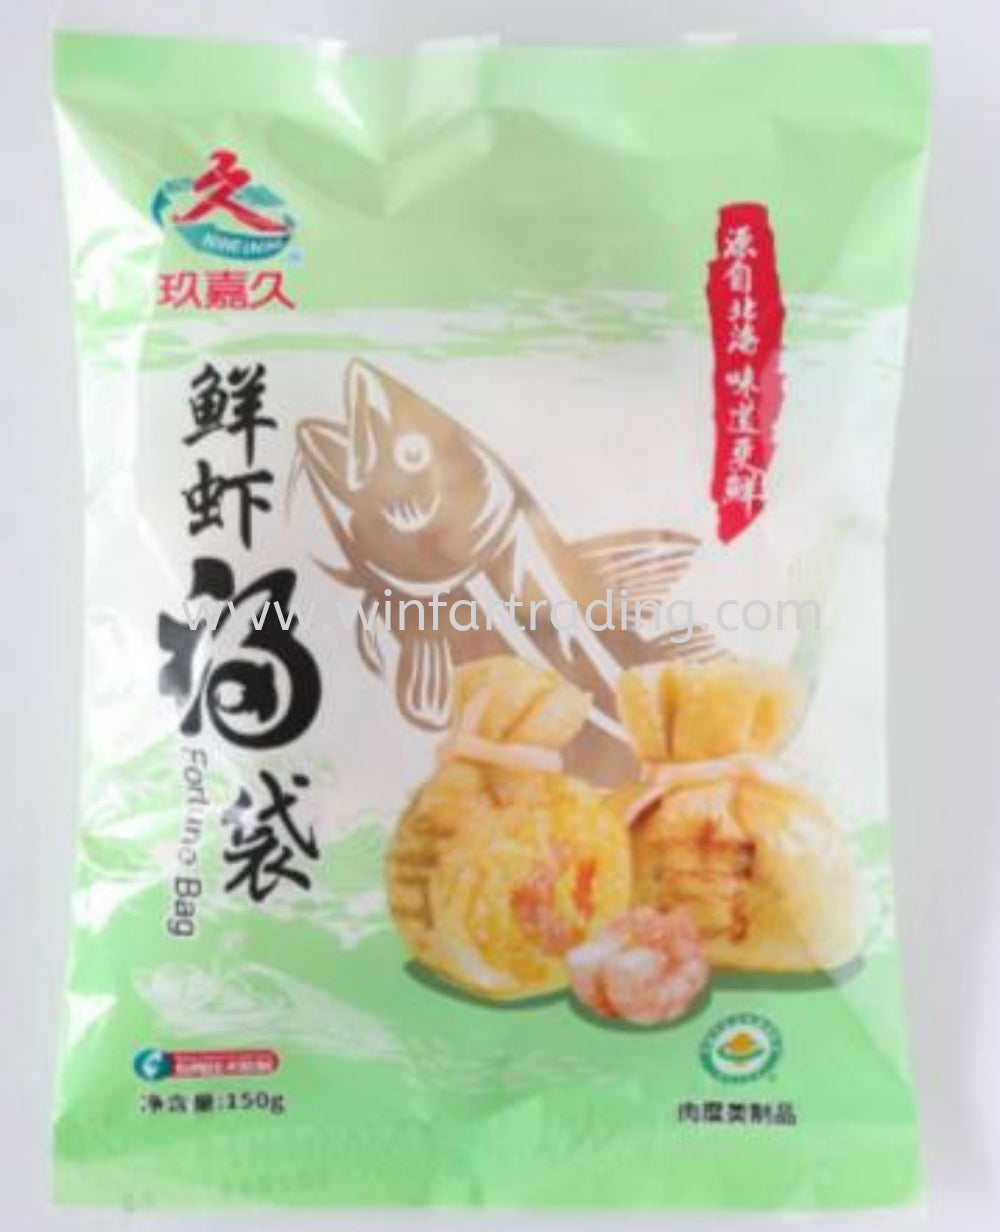 玖嘉久 鲜虾福袋 tofu pocket with shrimp 150g